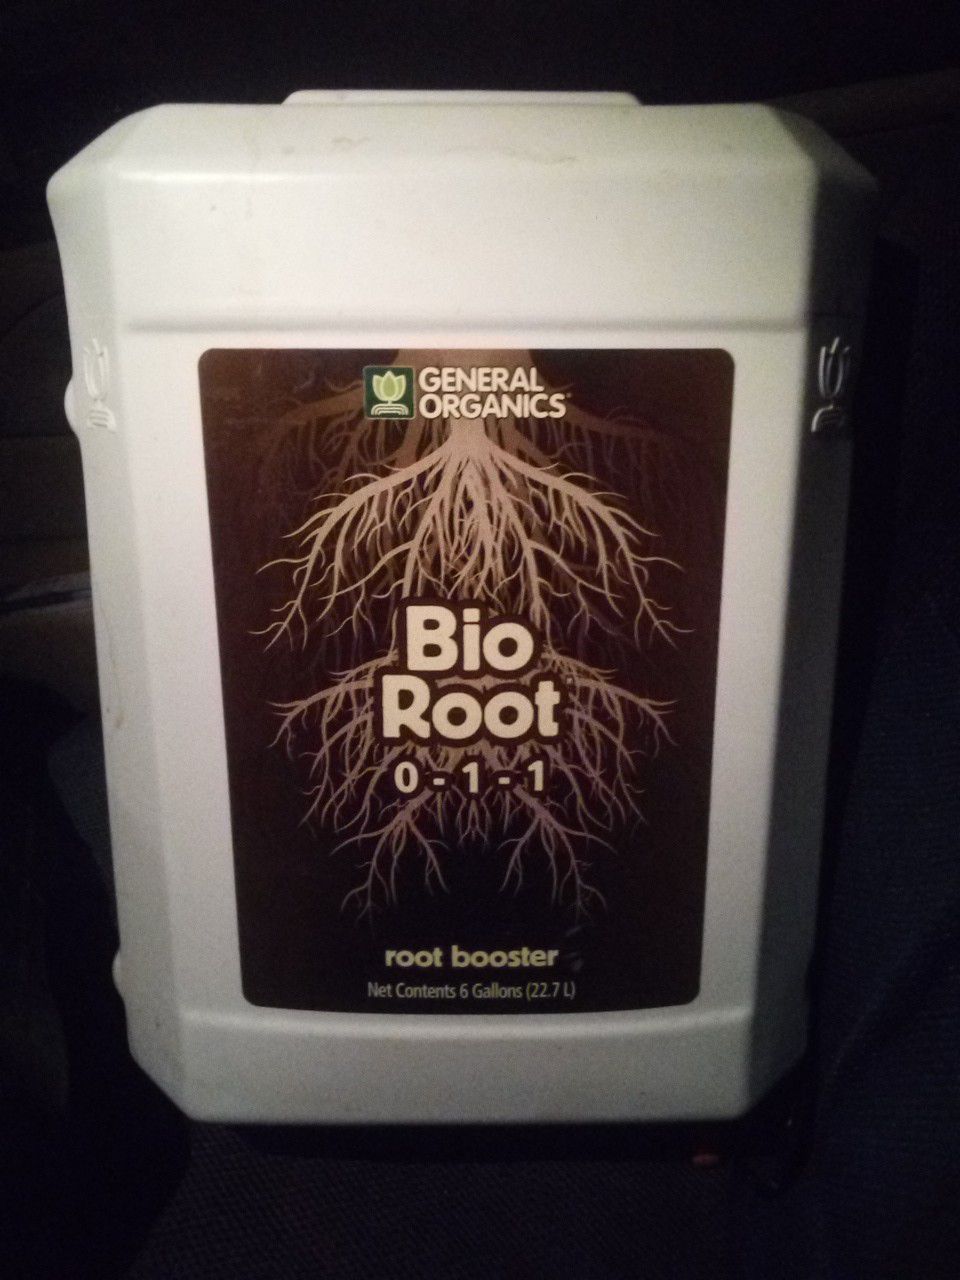 General organics bio root 6 gal